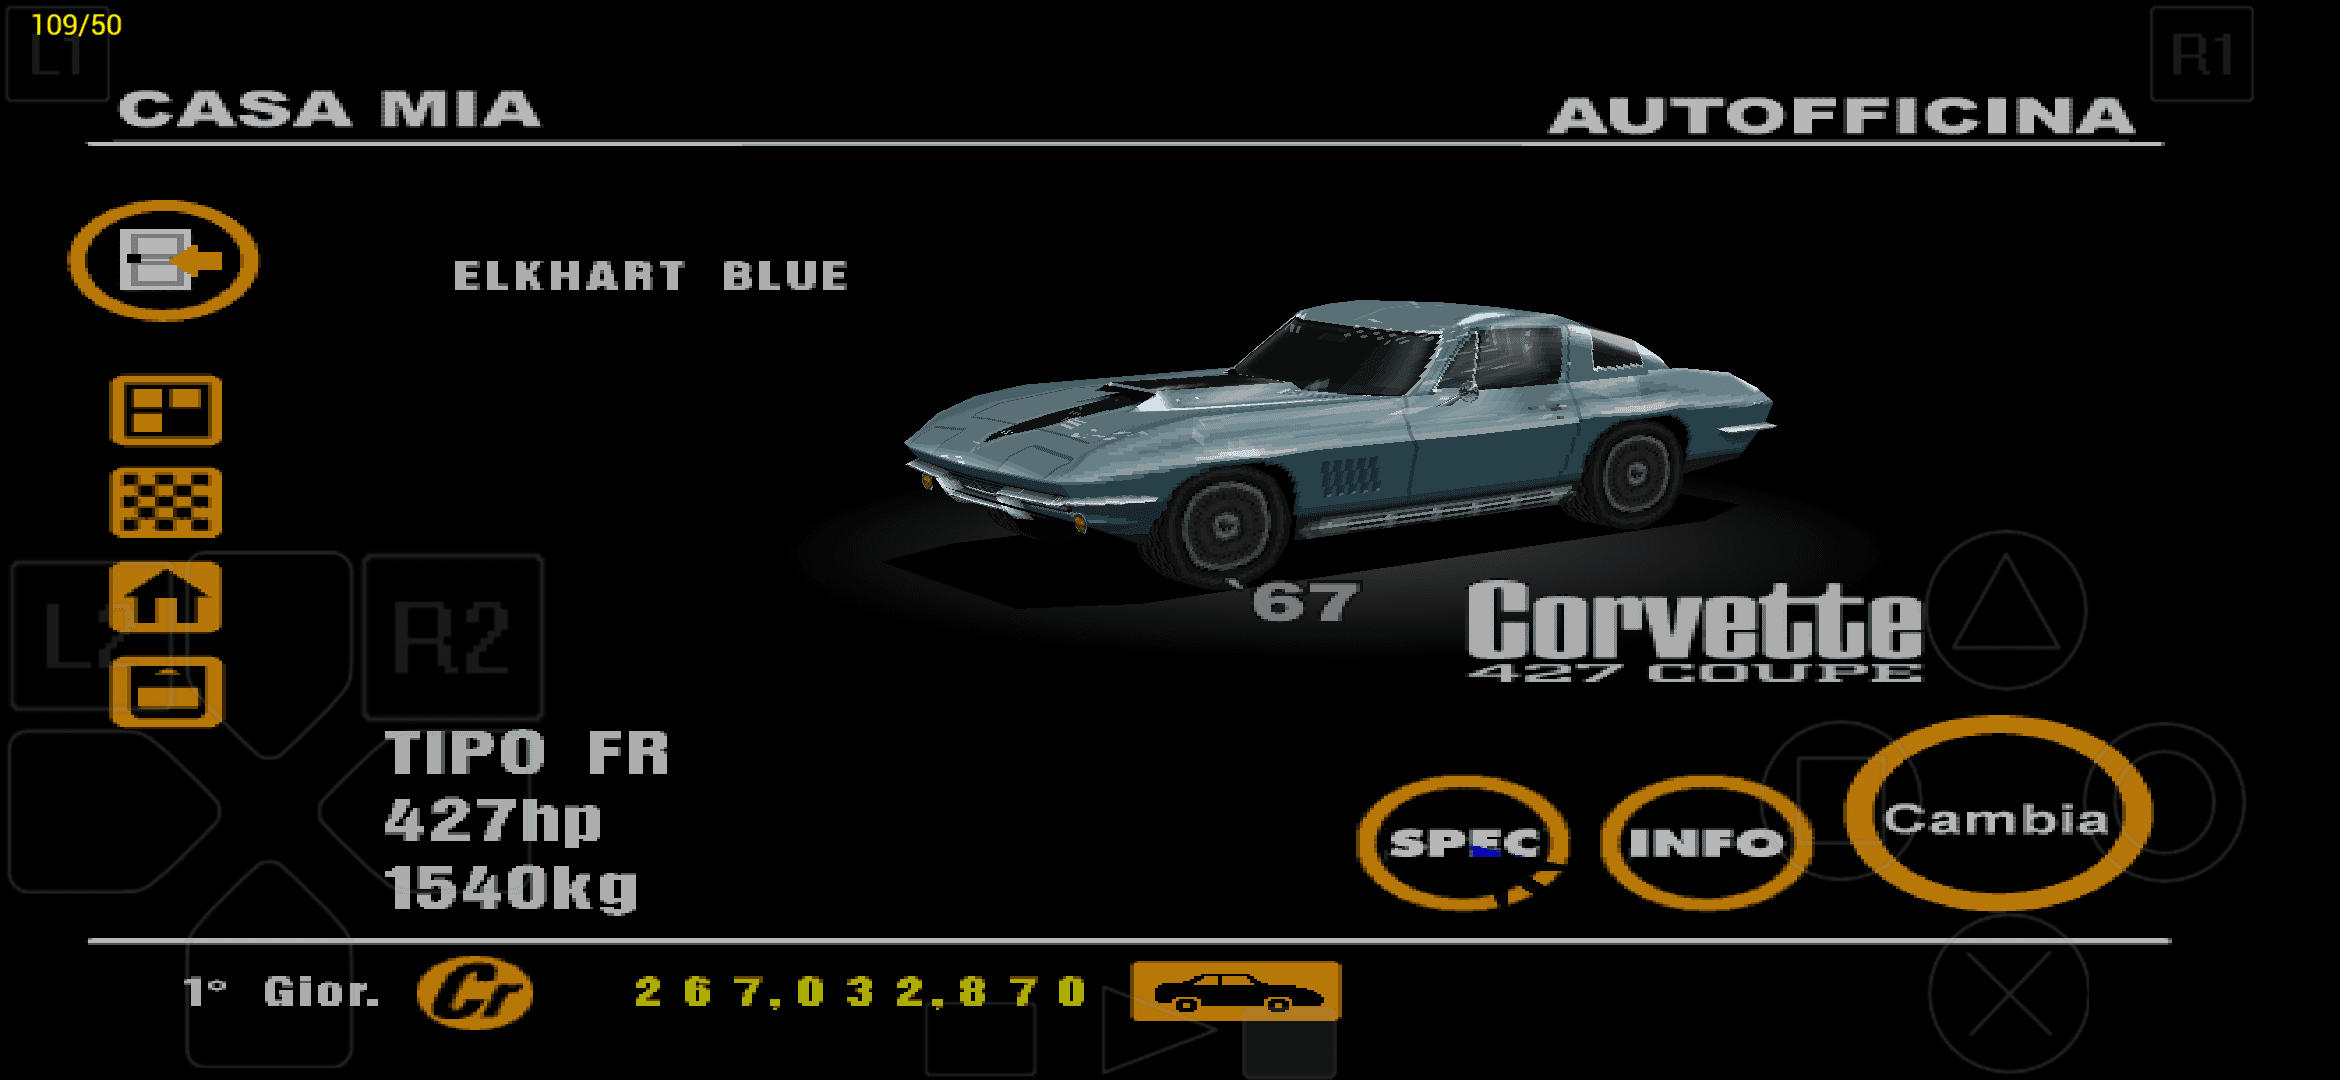 Chevrolet Corvette 427 Coupe '67 Elkhart Blue